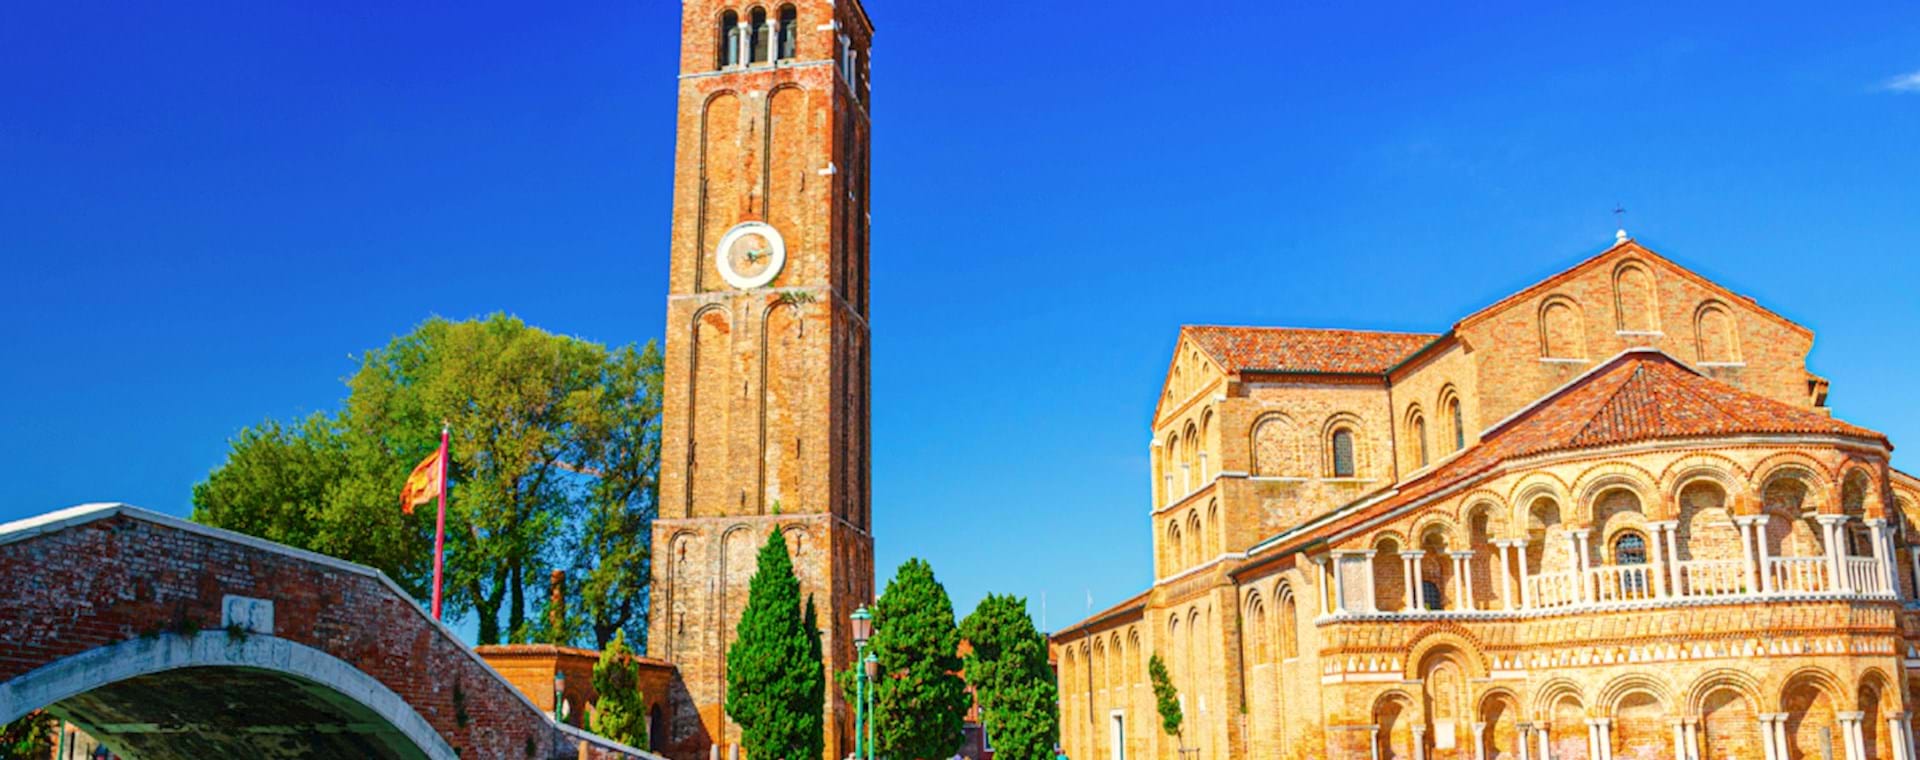 Church of Murano